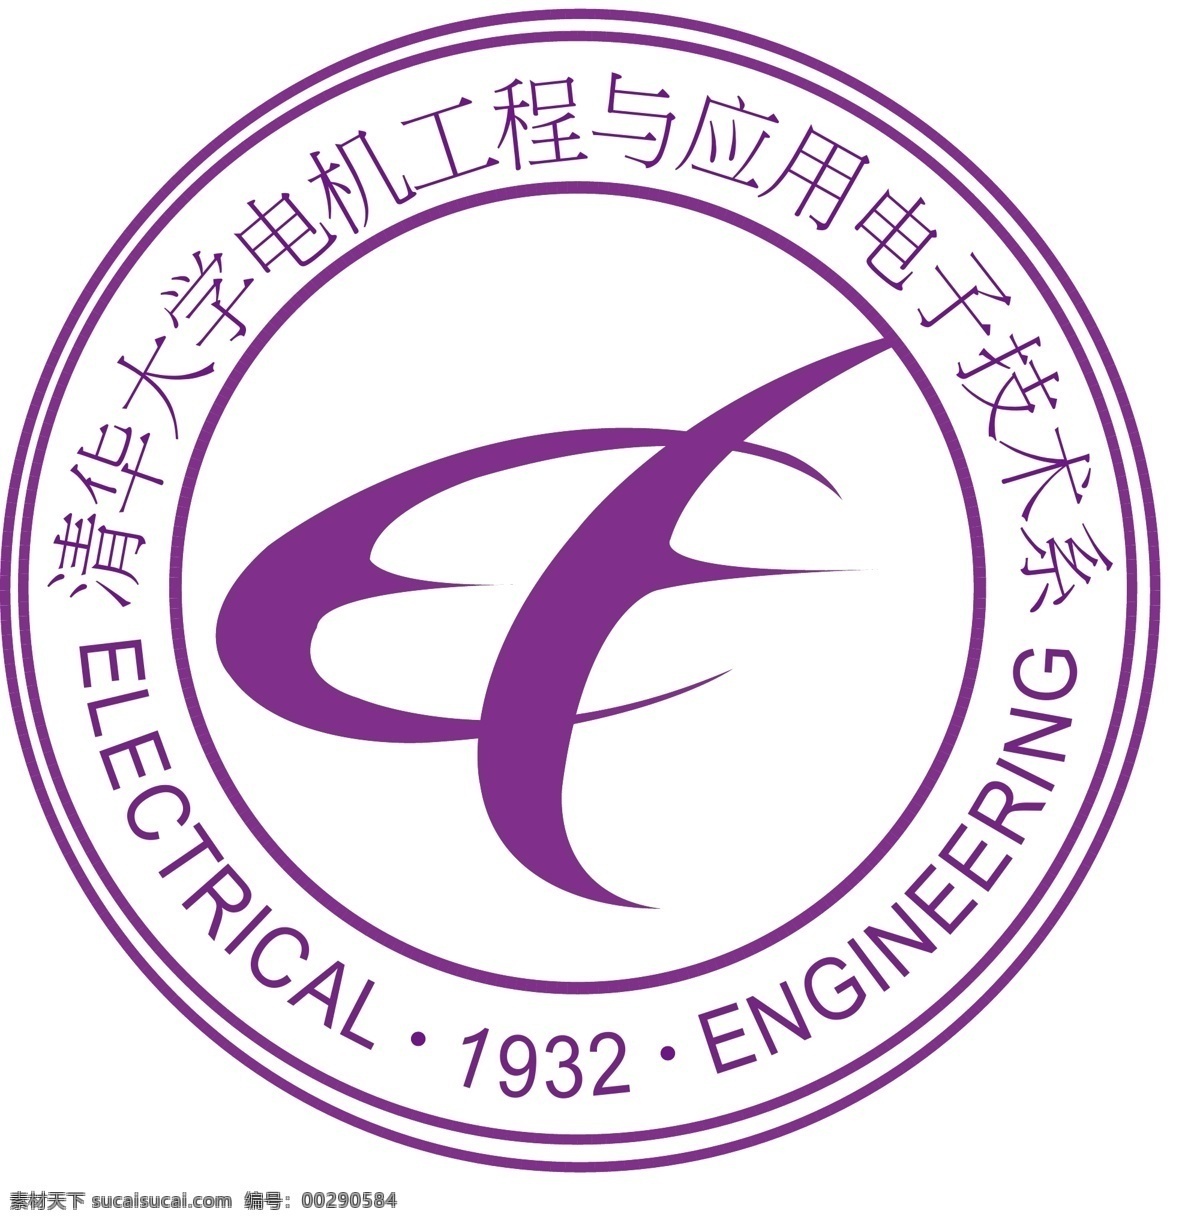 清华大学 工程 电机 电子 技术 技术系 电机与工程 应用 电子技术系 标识标志图标 矢量 白色